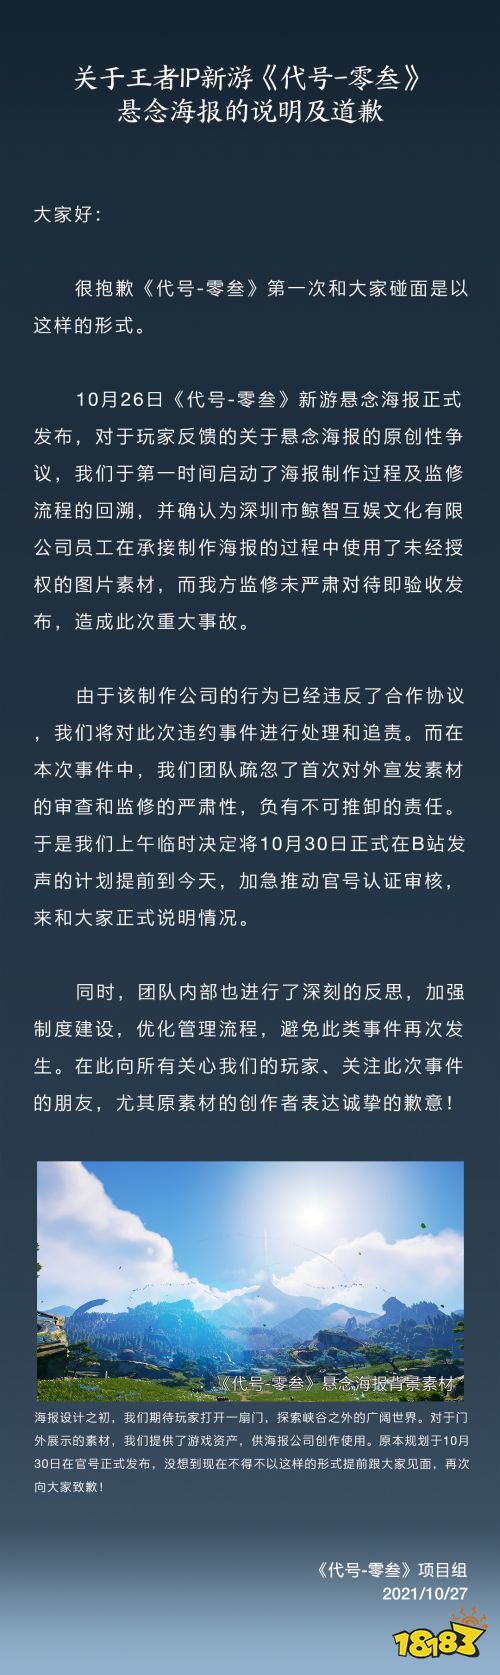 《王者荣耀》IP新游海报抄袭《原神》场景 官方致歉